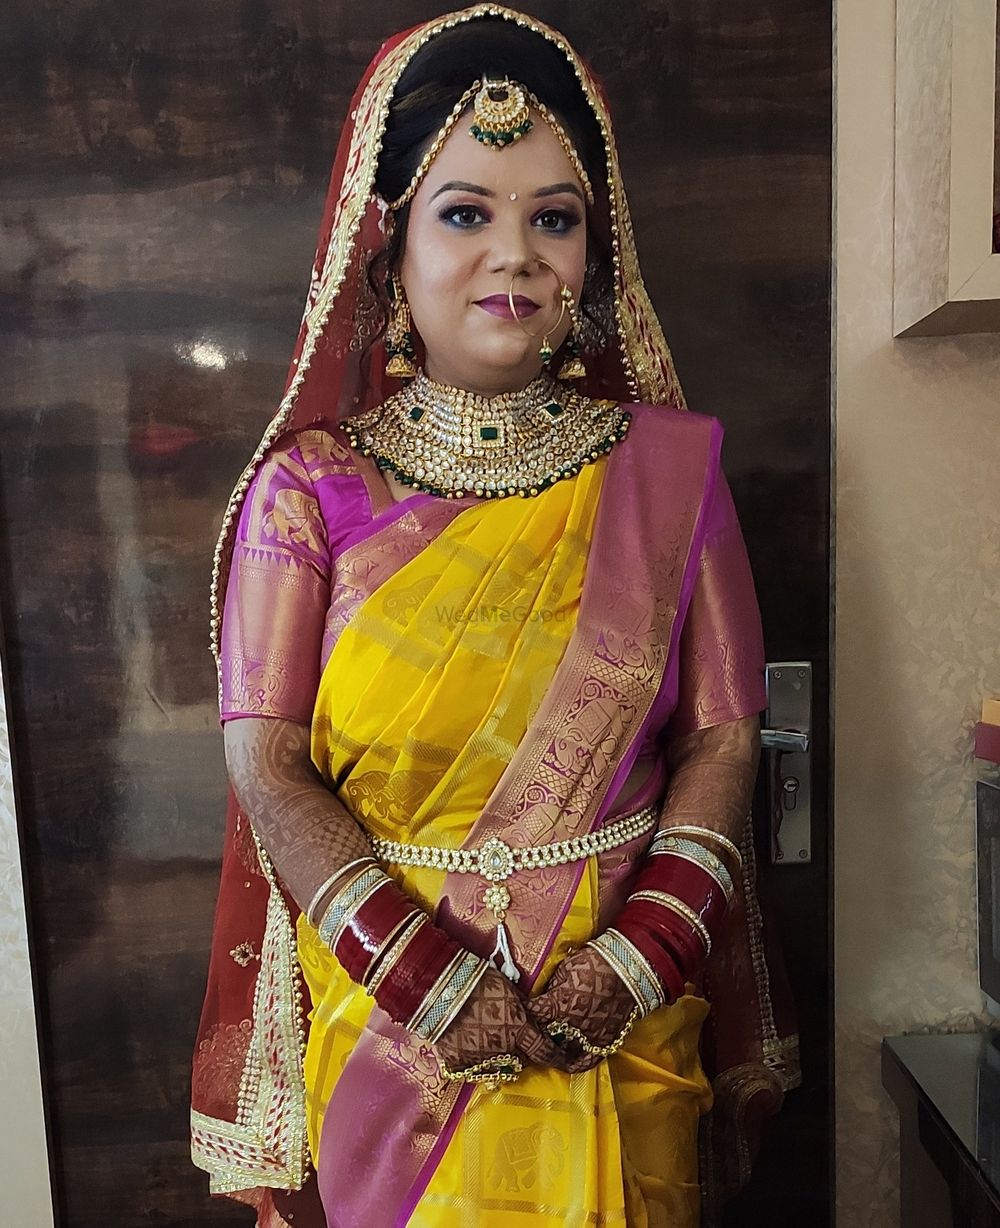 Photo From shivaani (Hd Bridal makeup) day wedding make up - By Heena Batra Makeovers